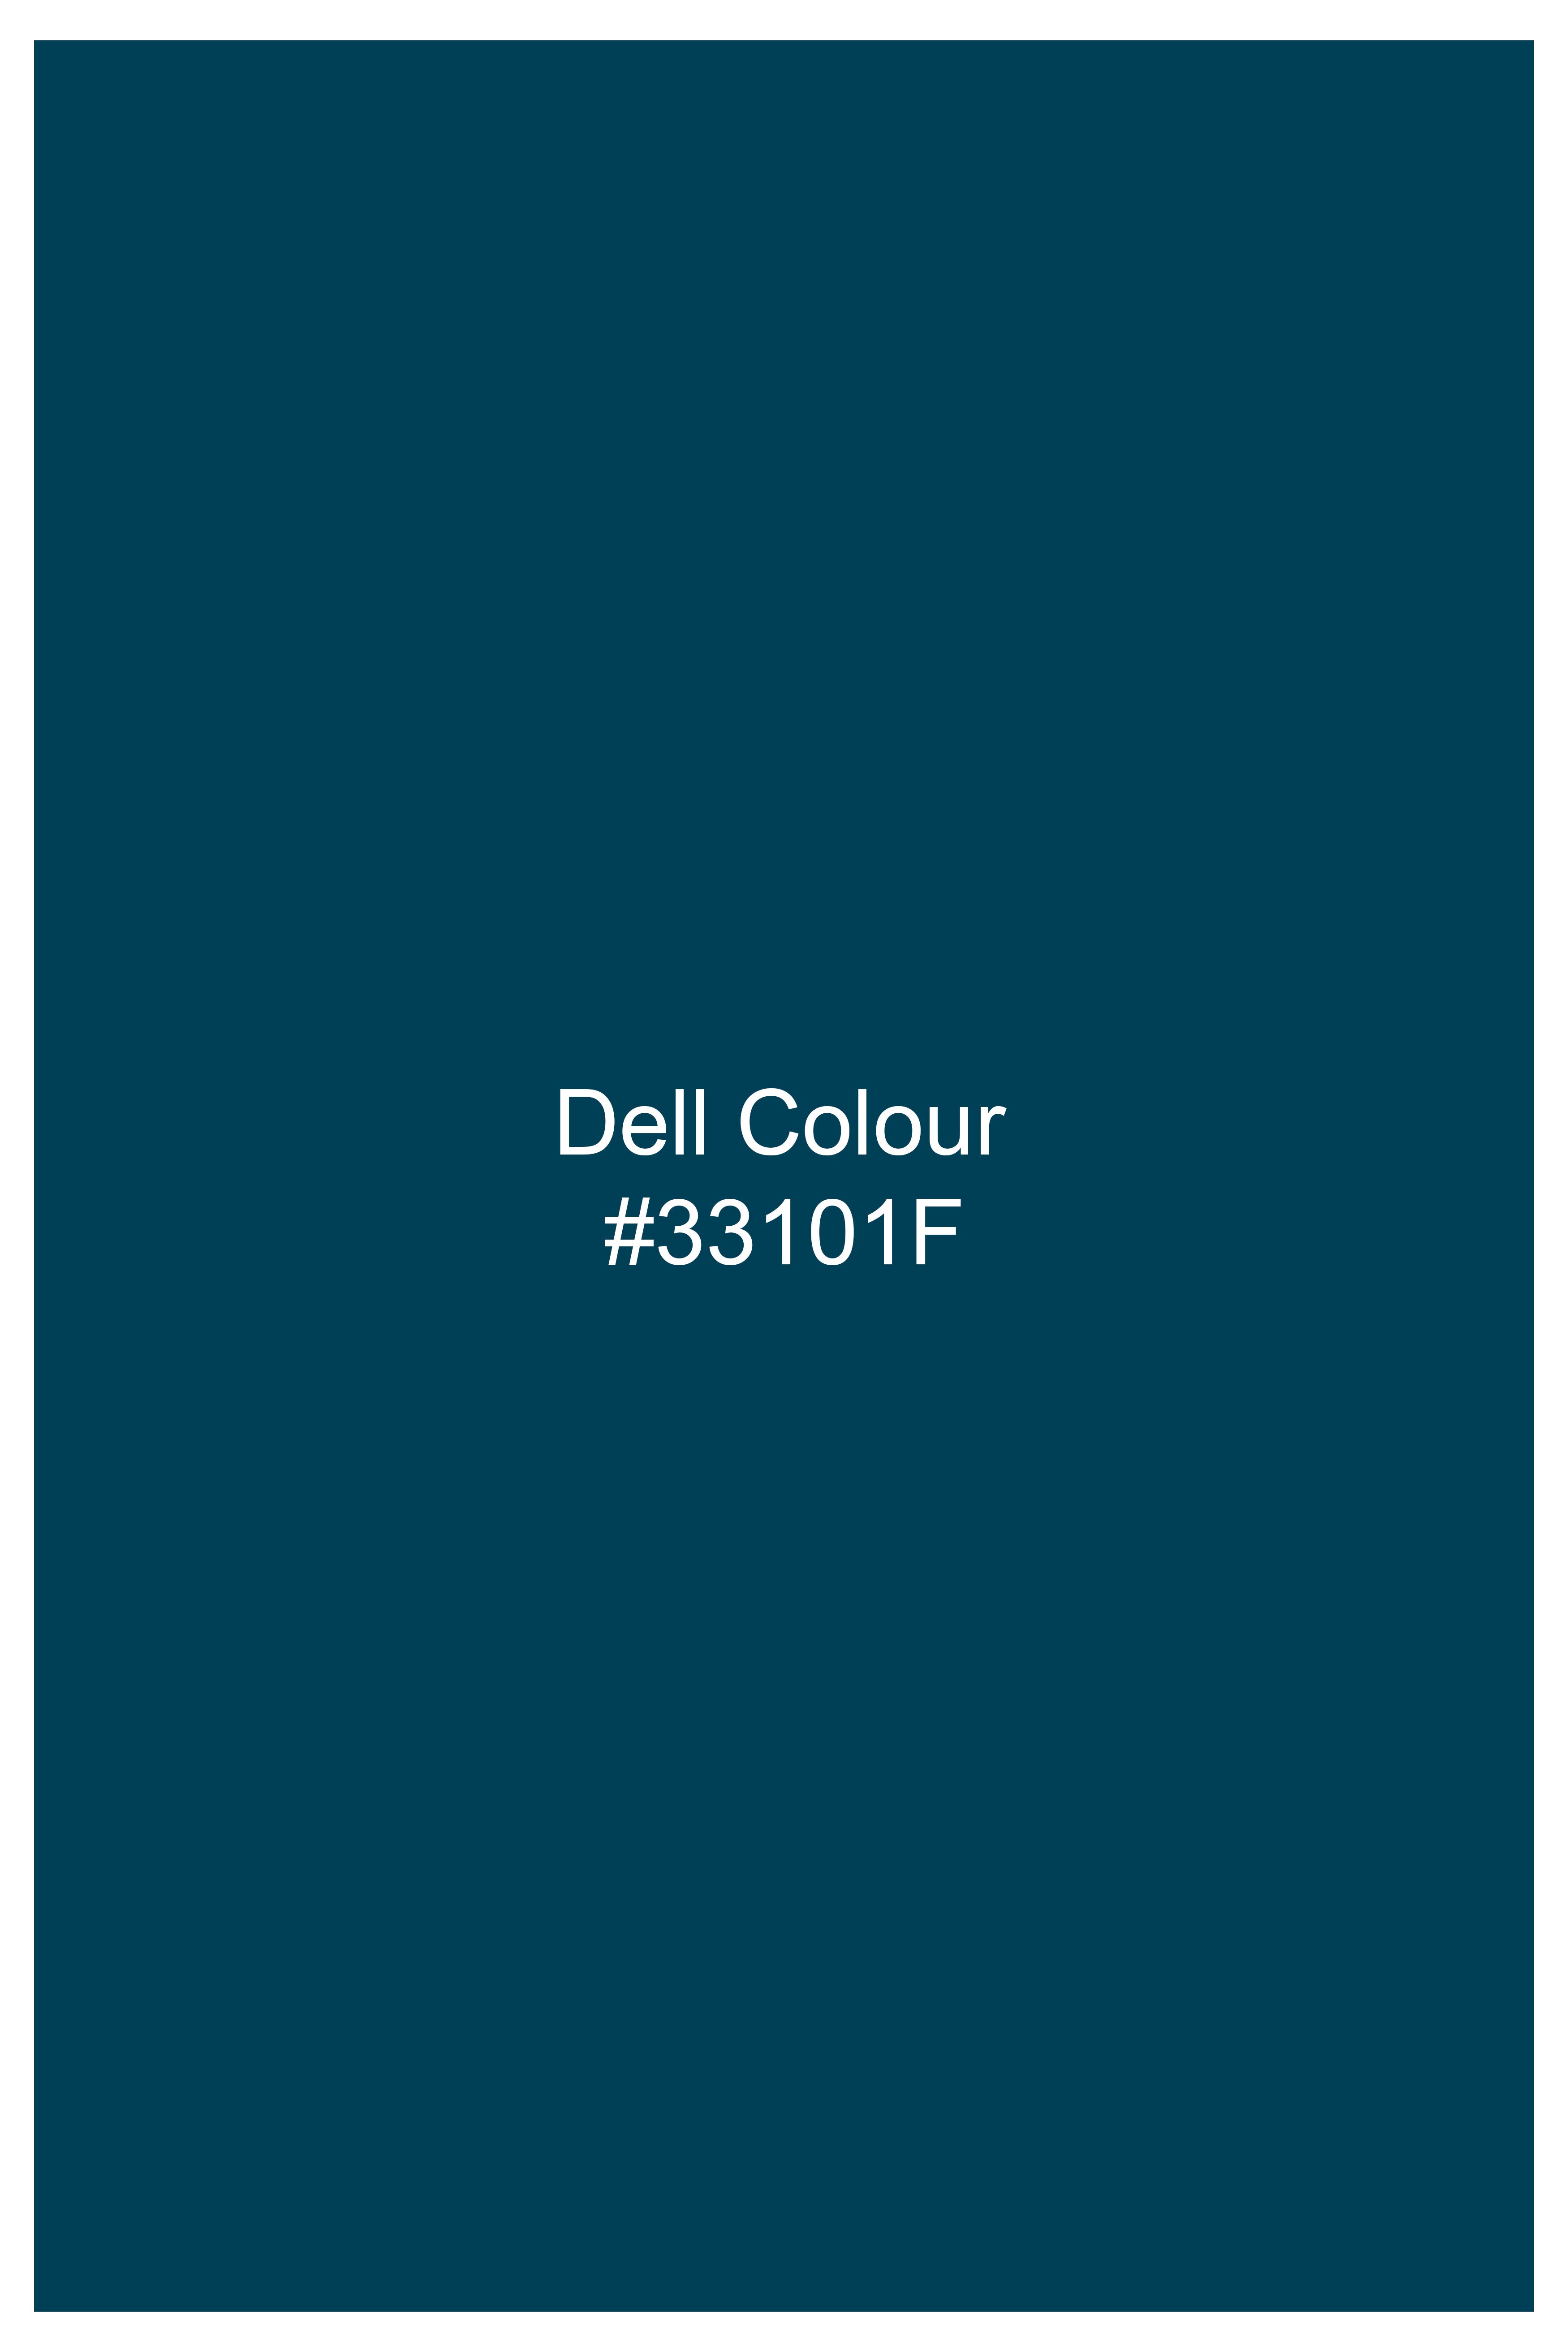 Dell Blue Wool Rich Waistcoat V2841-36, V2841-38, V2841-40, V2841-42, V2841-44, V2841-46, V2841-48, V2841-50, V2841-52, V2841-54, V2841-56, V2841-58, V2841-60